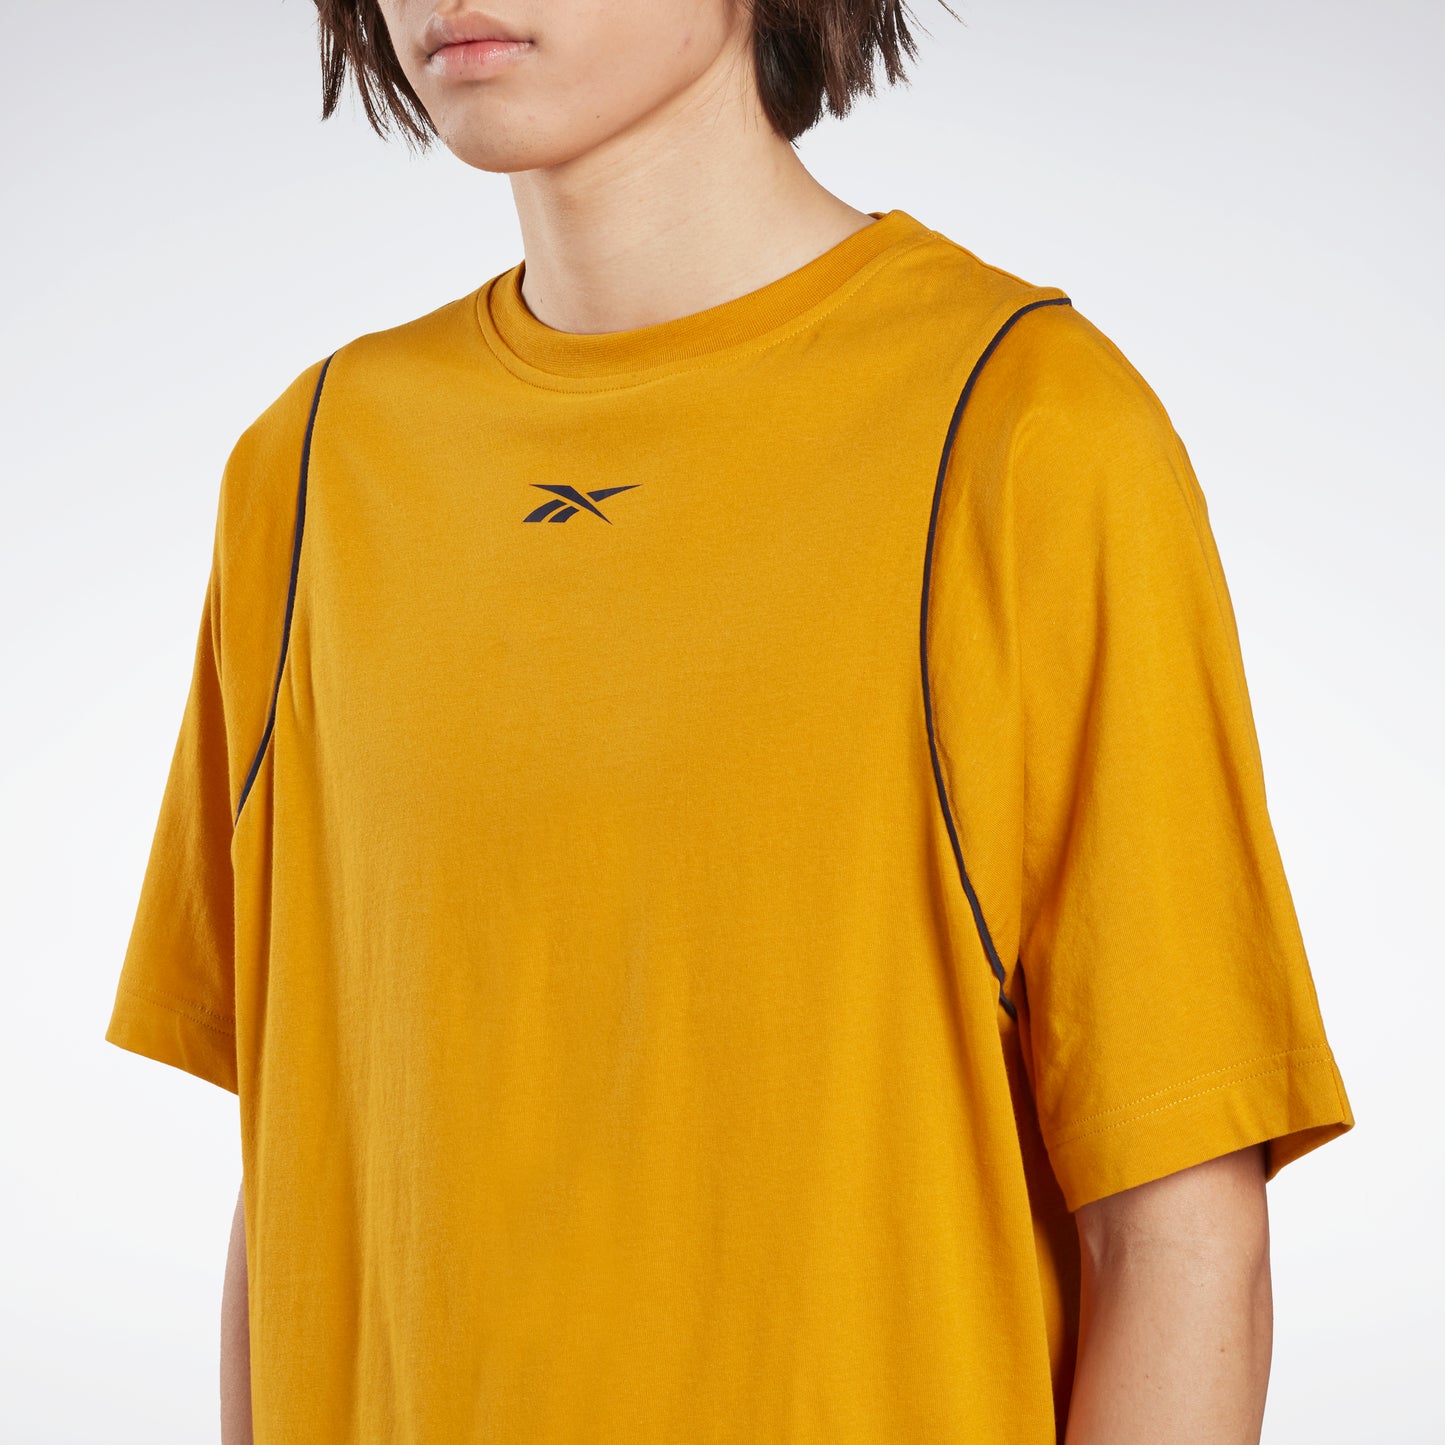 Reebok Apparel Men Myt Graphic T-Shirt Bright Ochre